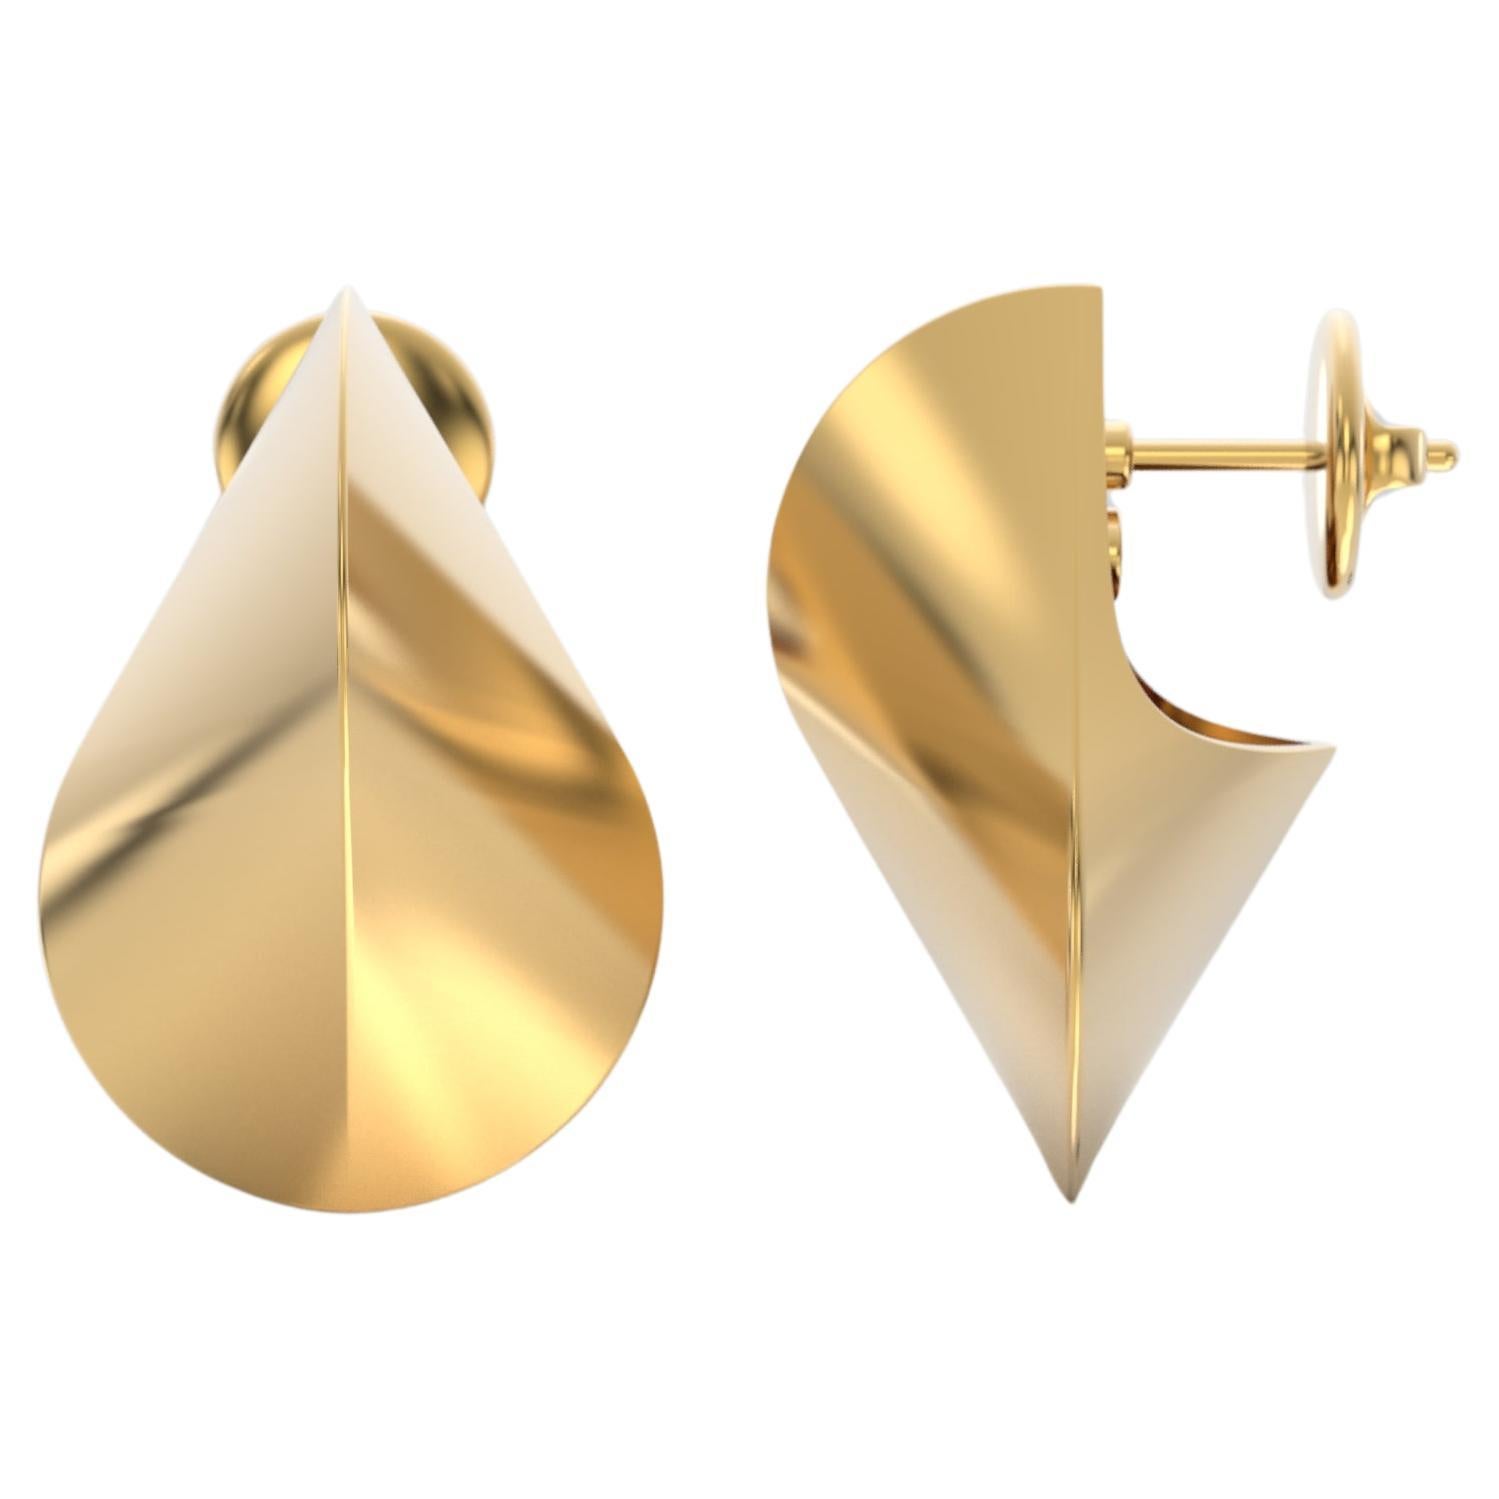 Italian 14k Gold Earrings, Modern Elegant Earrings by Oltremare Gioielli For Sale